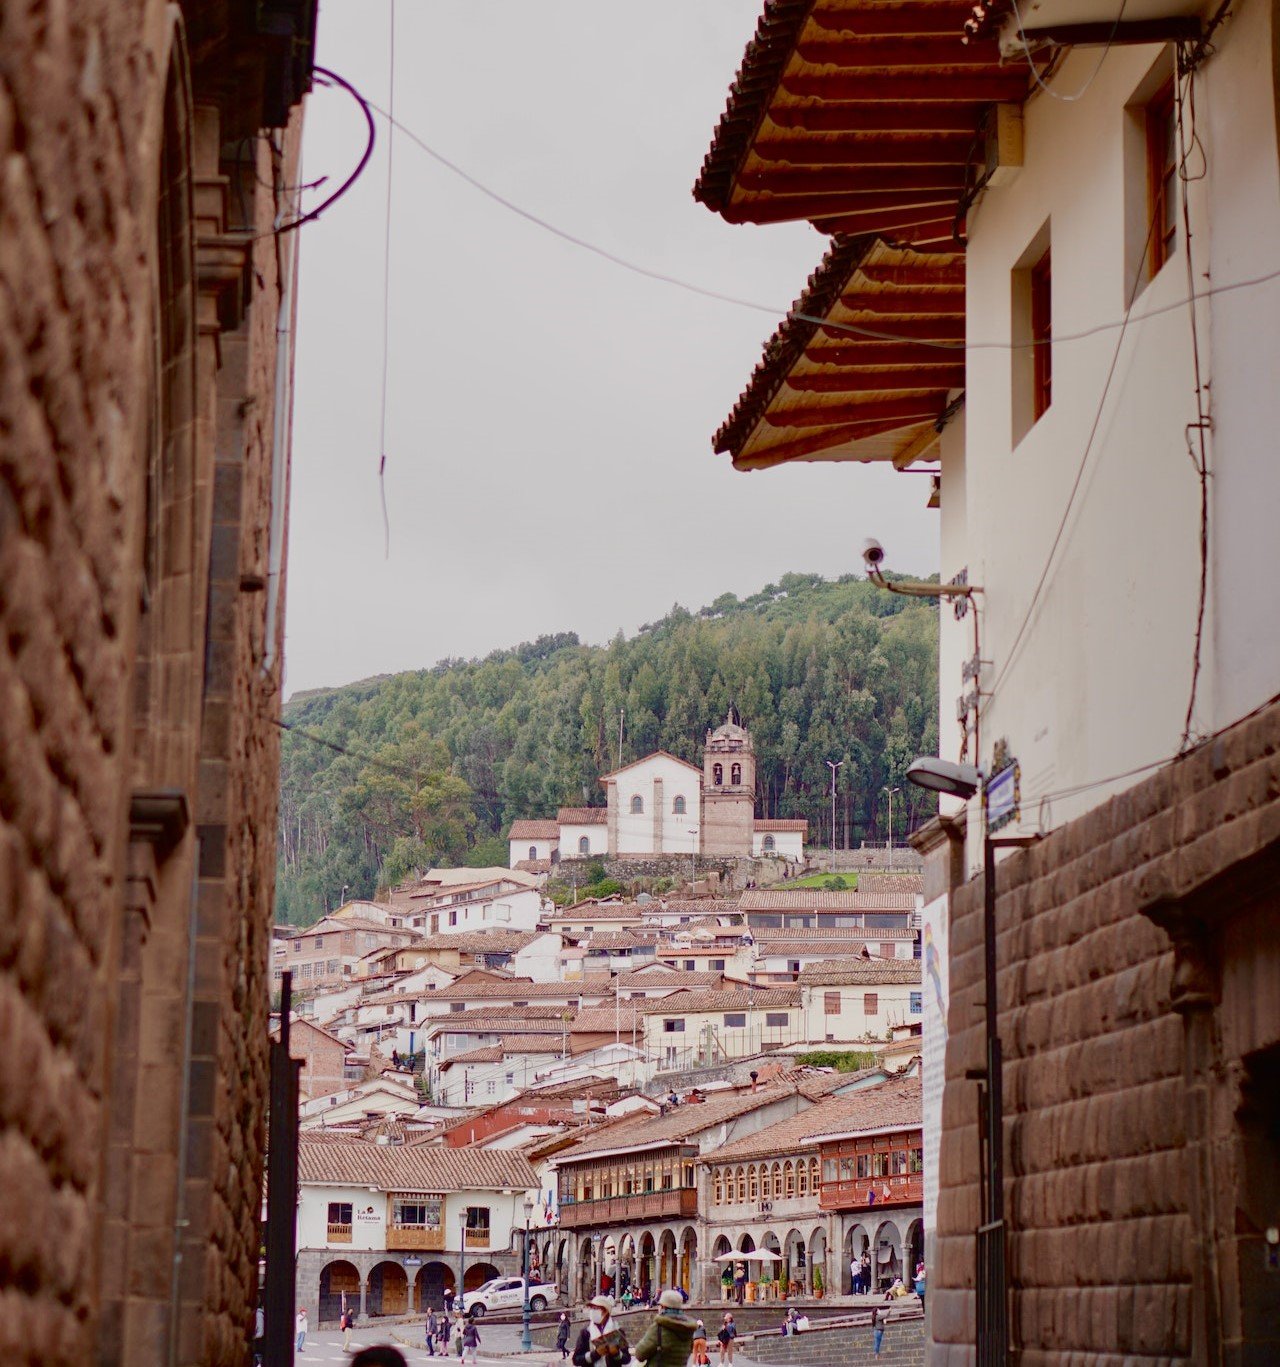 Het oude centrum van Cuzco, Peru